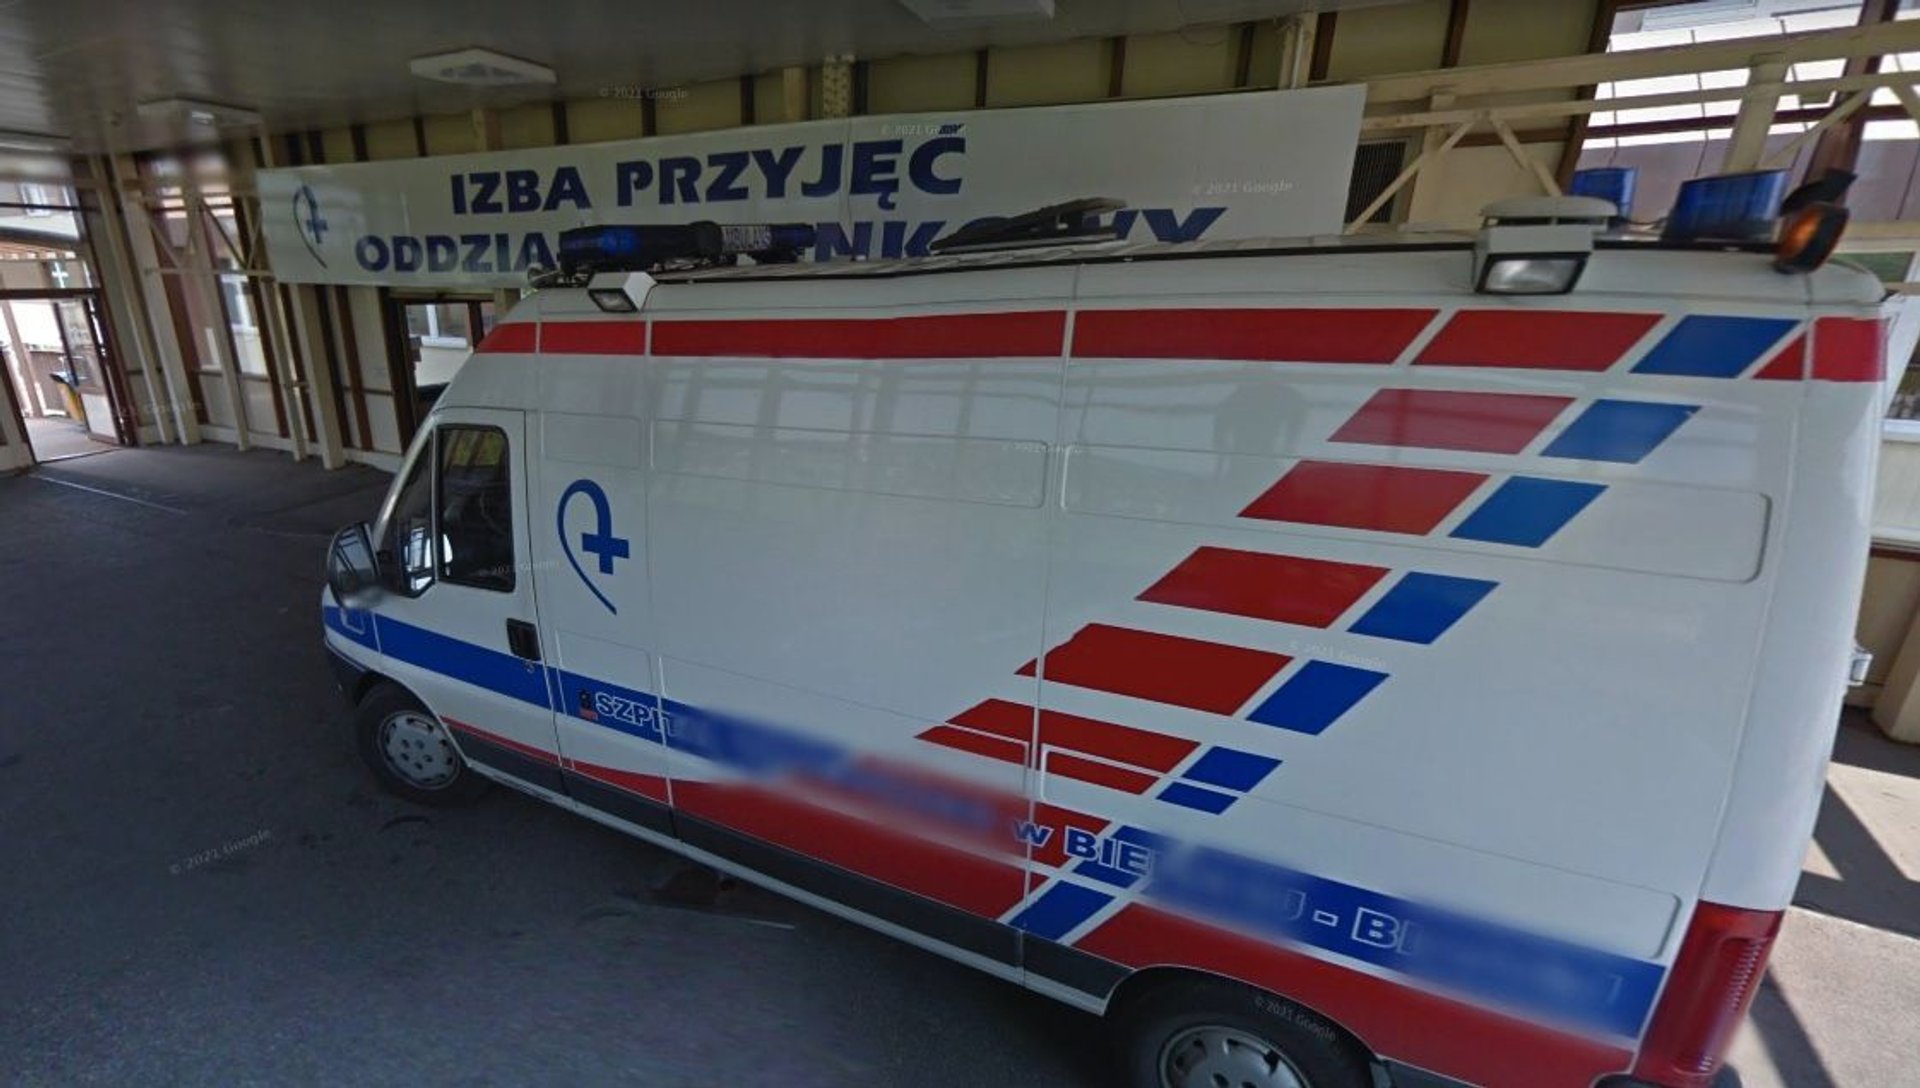 32-letni pacjent wyskoczył z okna szpitala w Bielsku-Białej